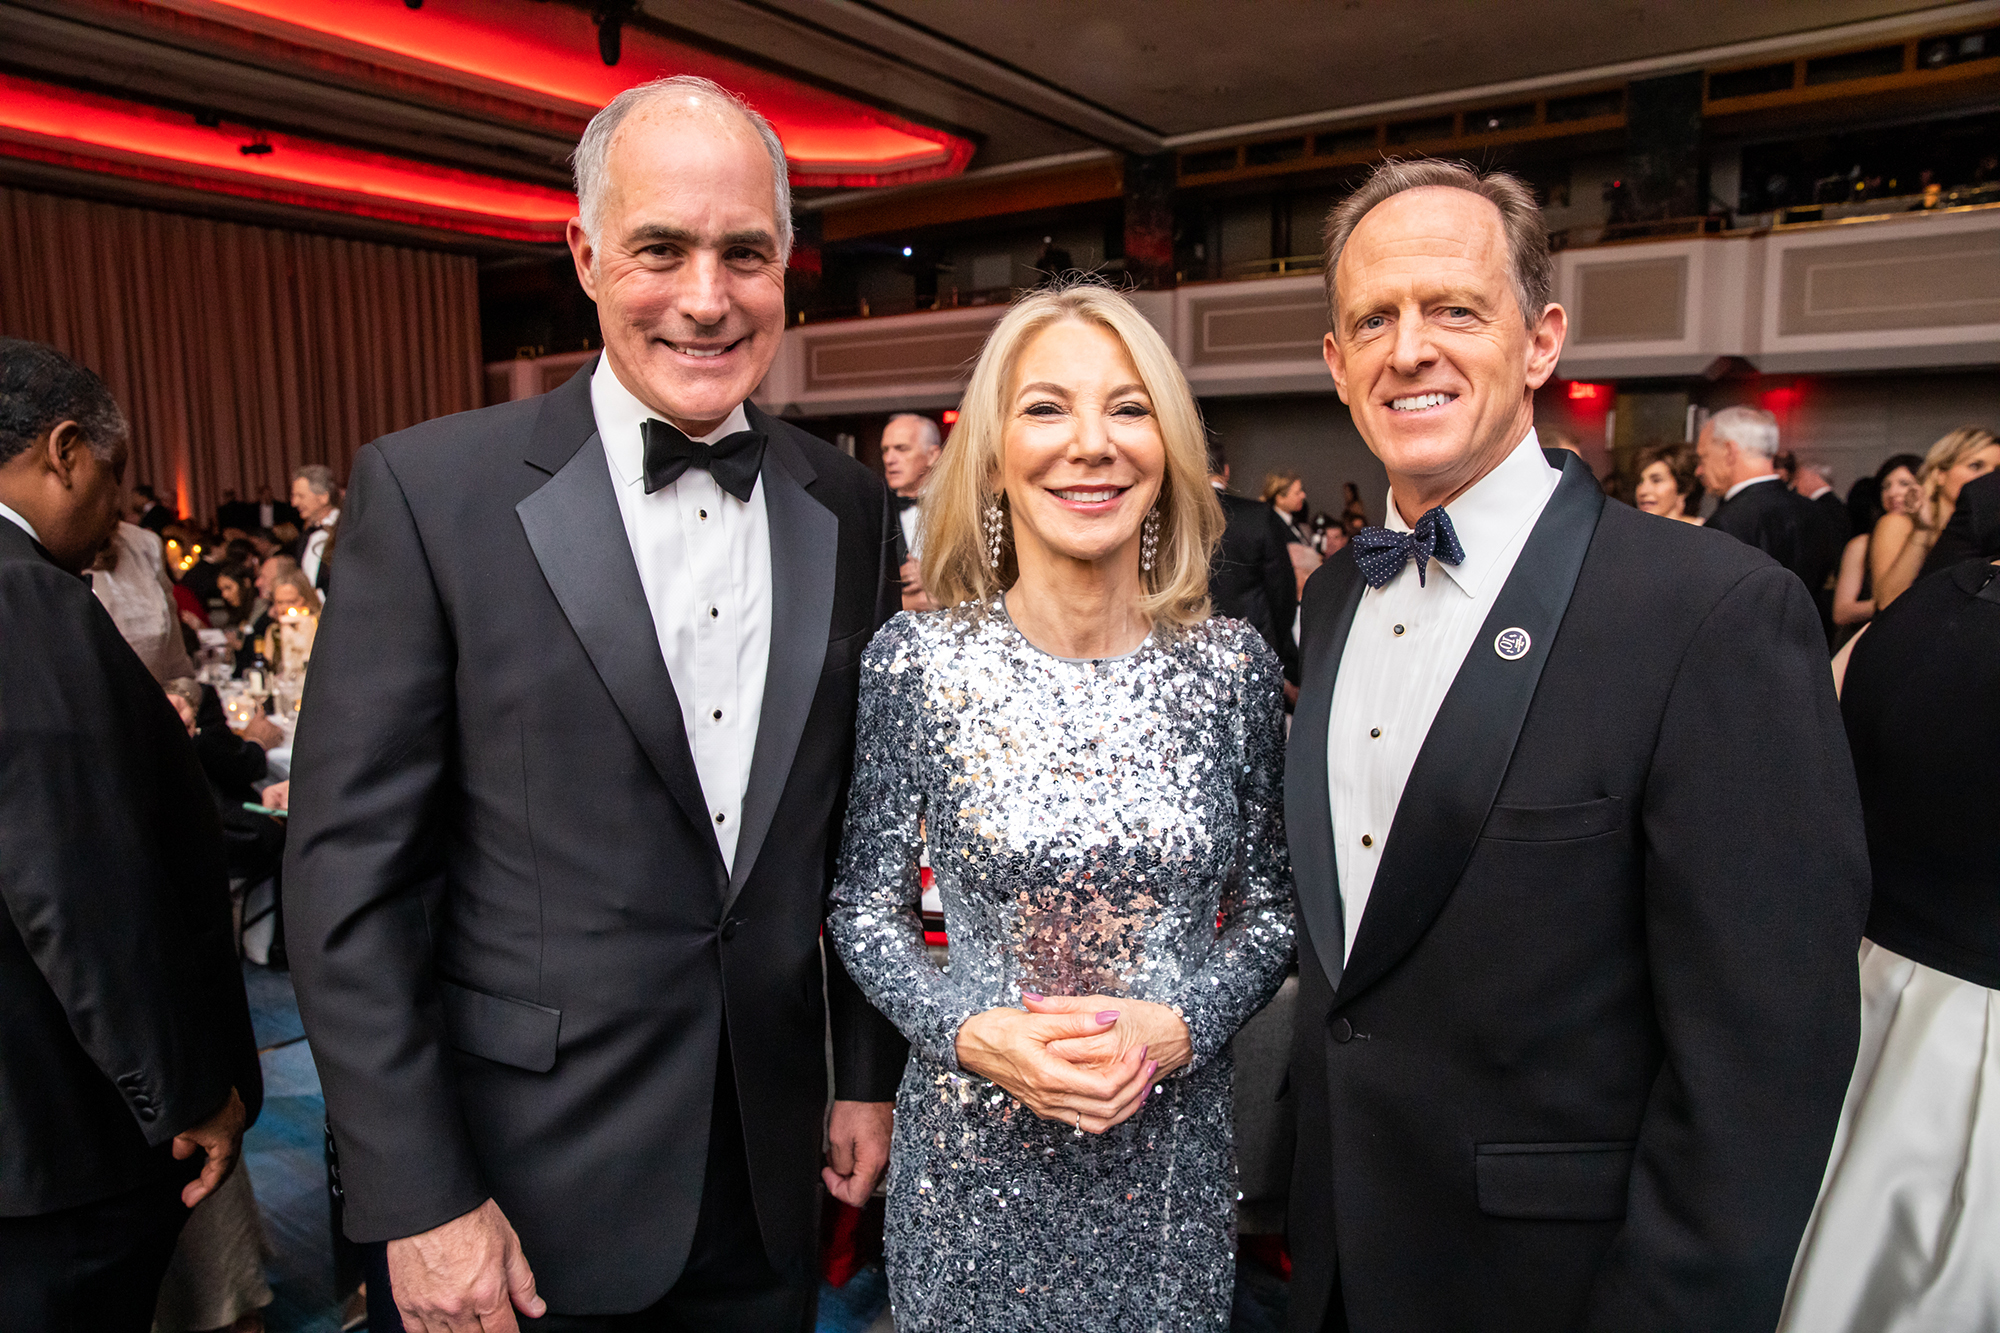 Penn president Amy Gutmann with senators xxxxx at the Pennsylvania Society Awards dinner